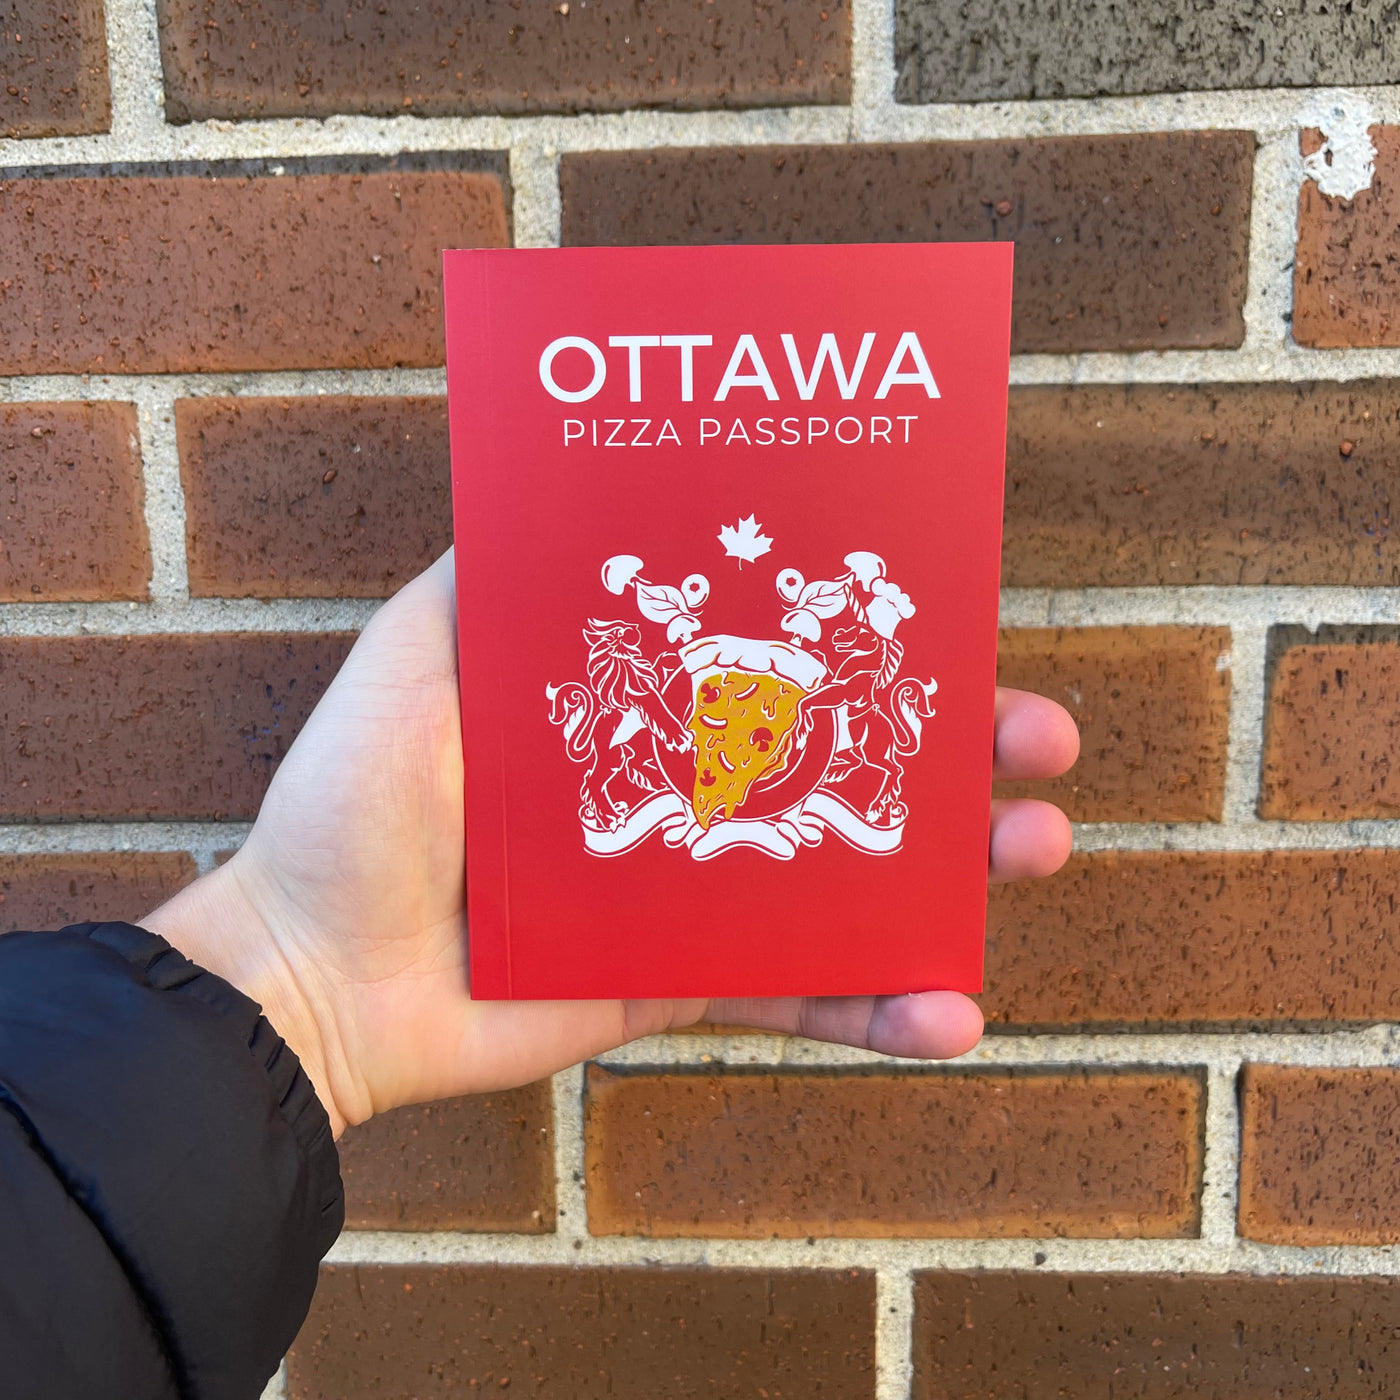 Ottawa Pizza Passport Cover